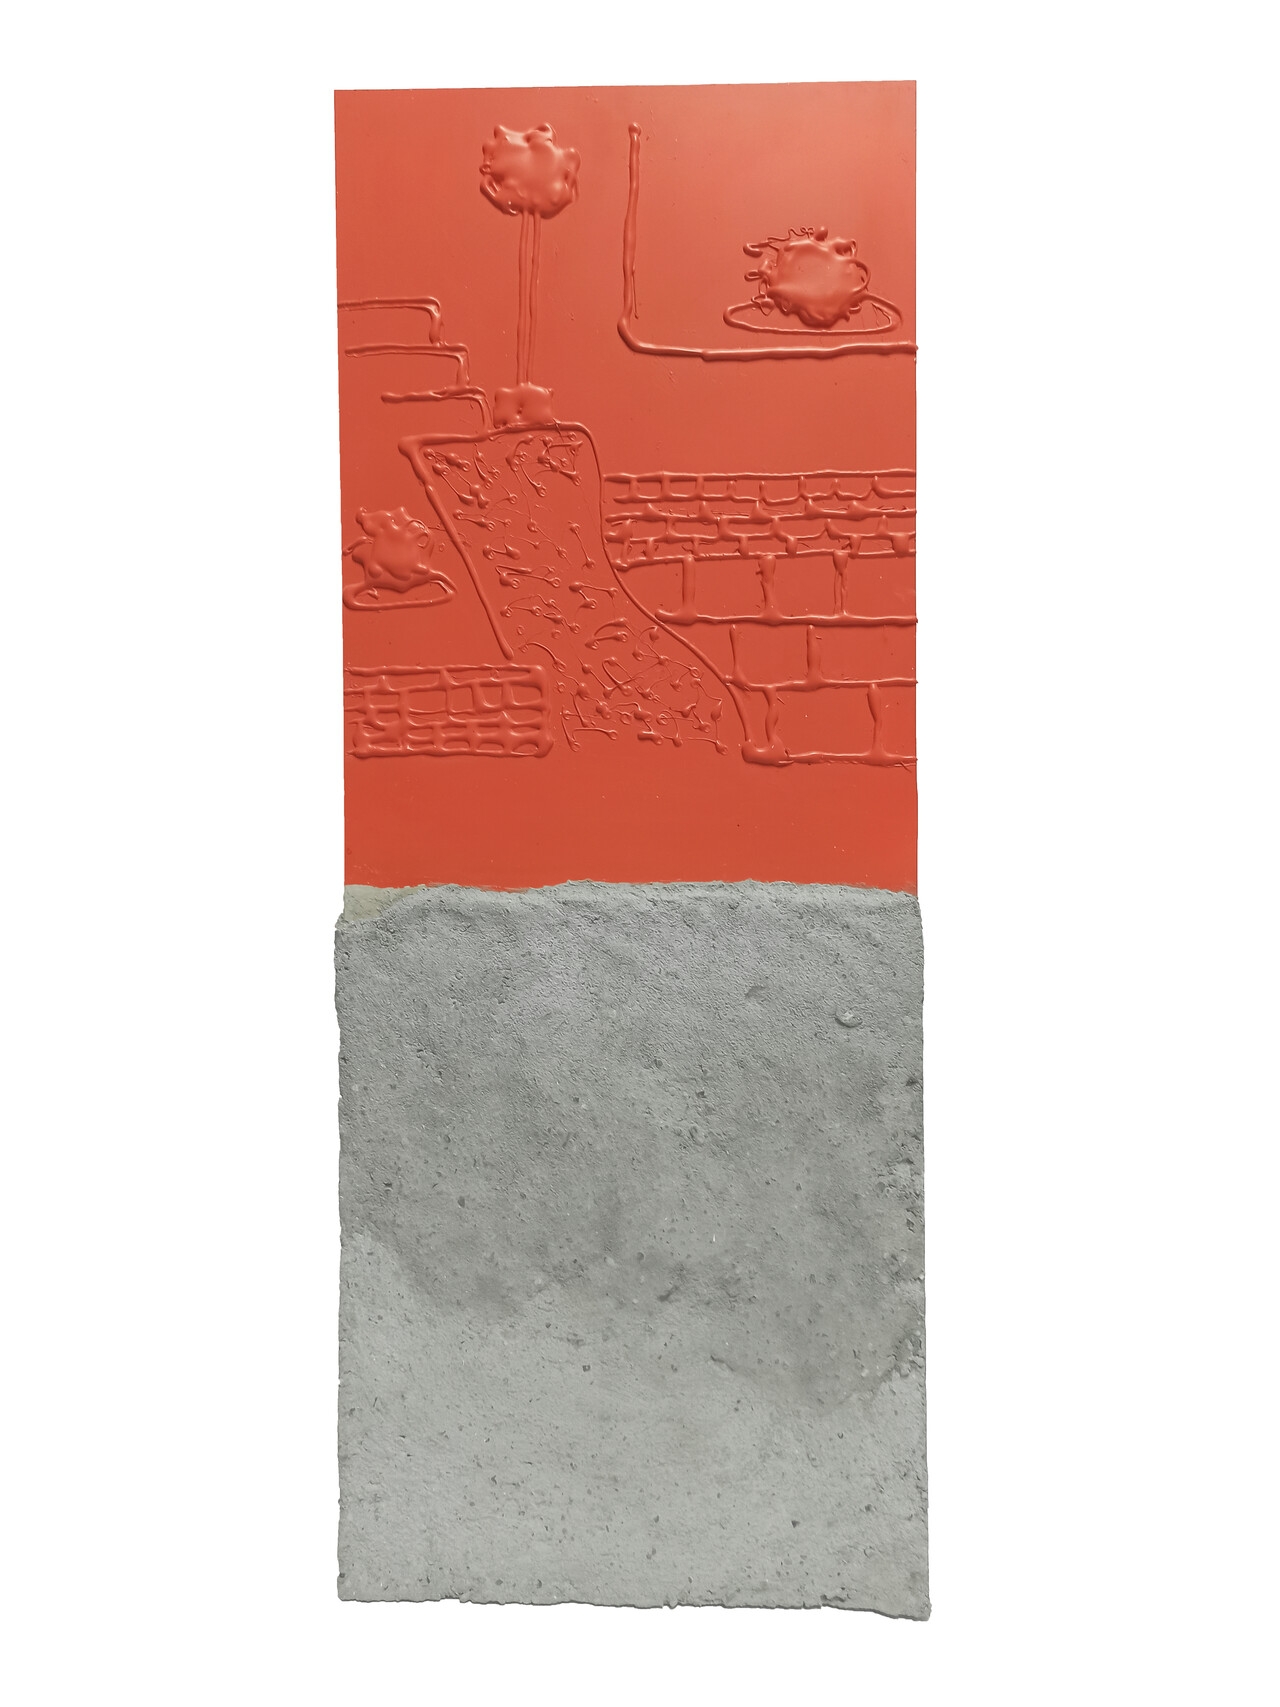 Terasse 4, 78×30×5cm, 2019, Acrylic paint, Concrete, Plastic, Plexiglass